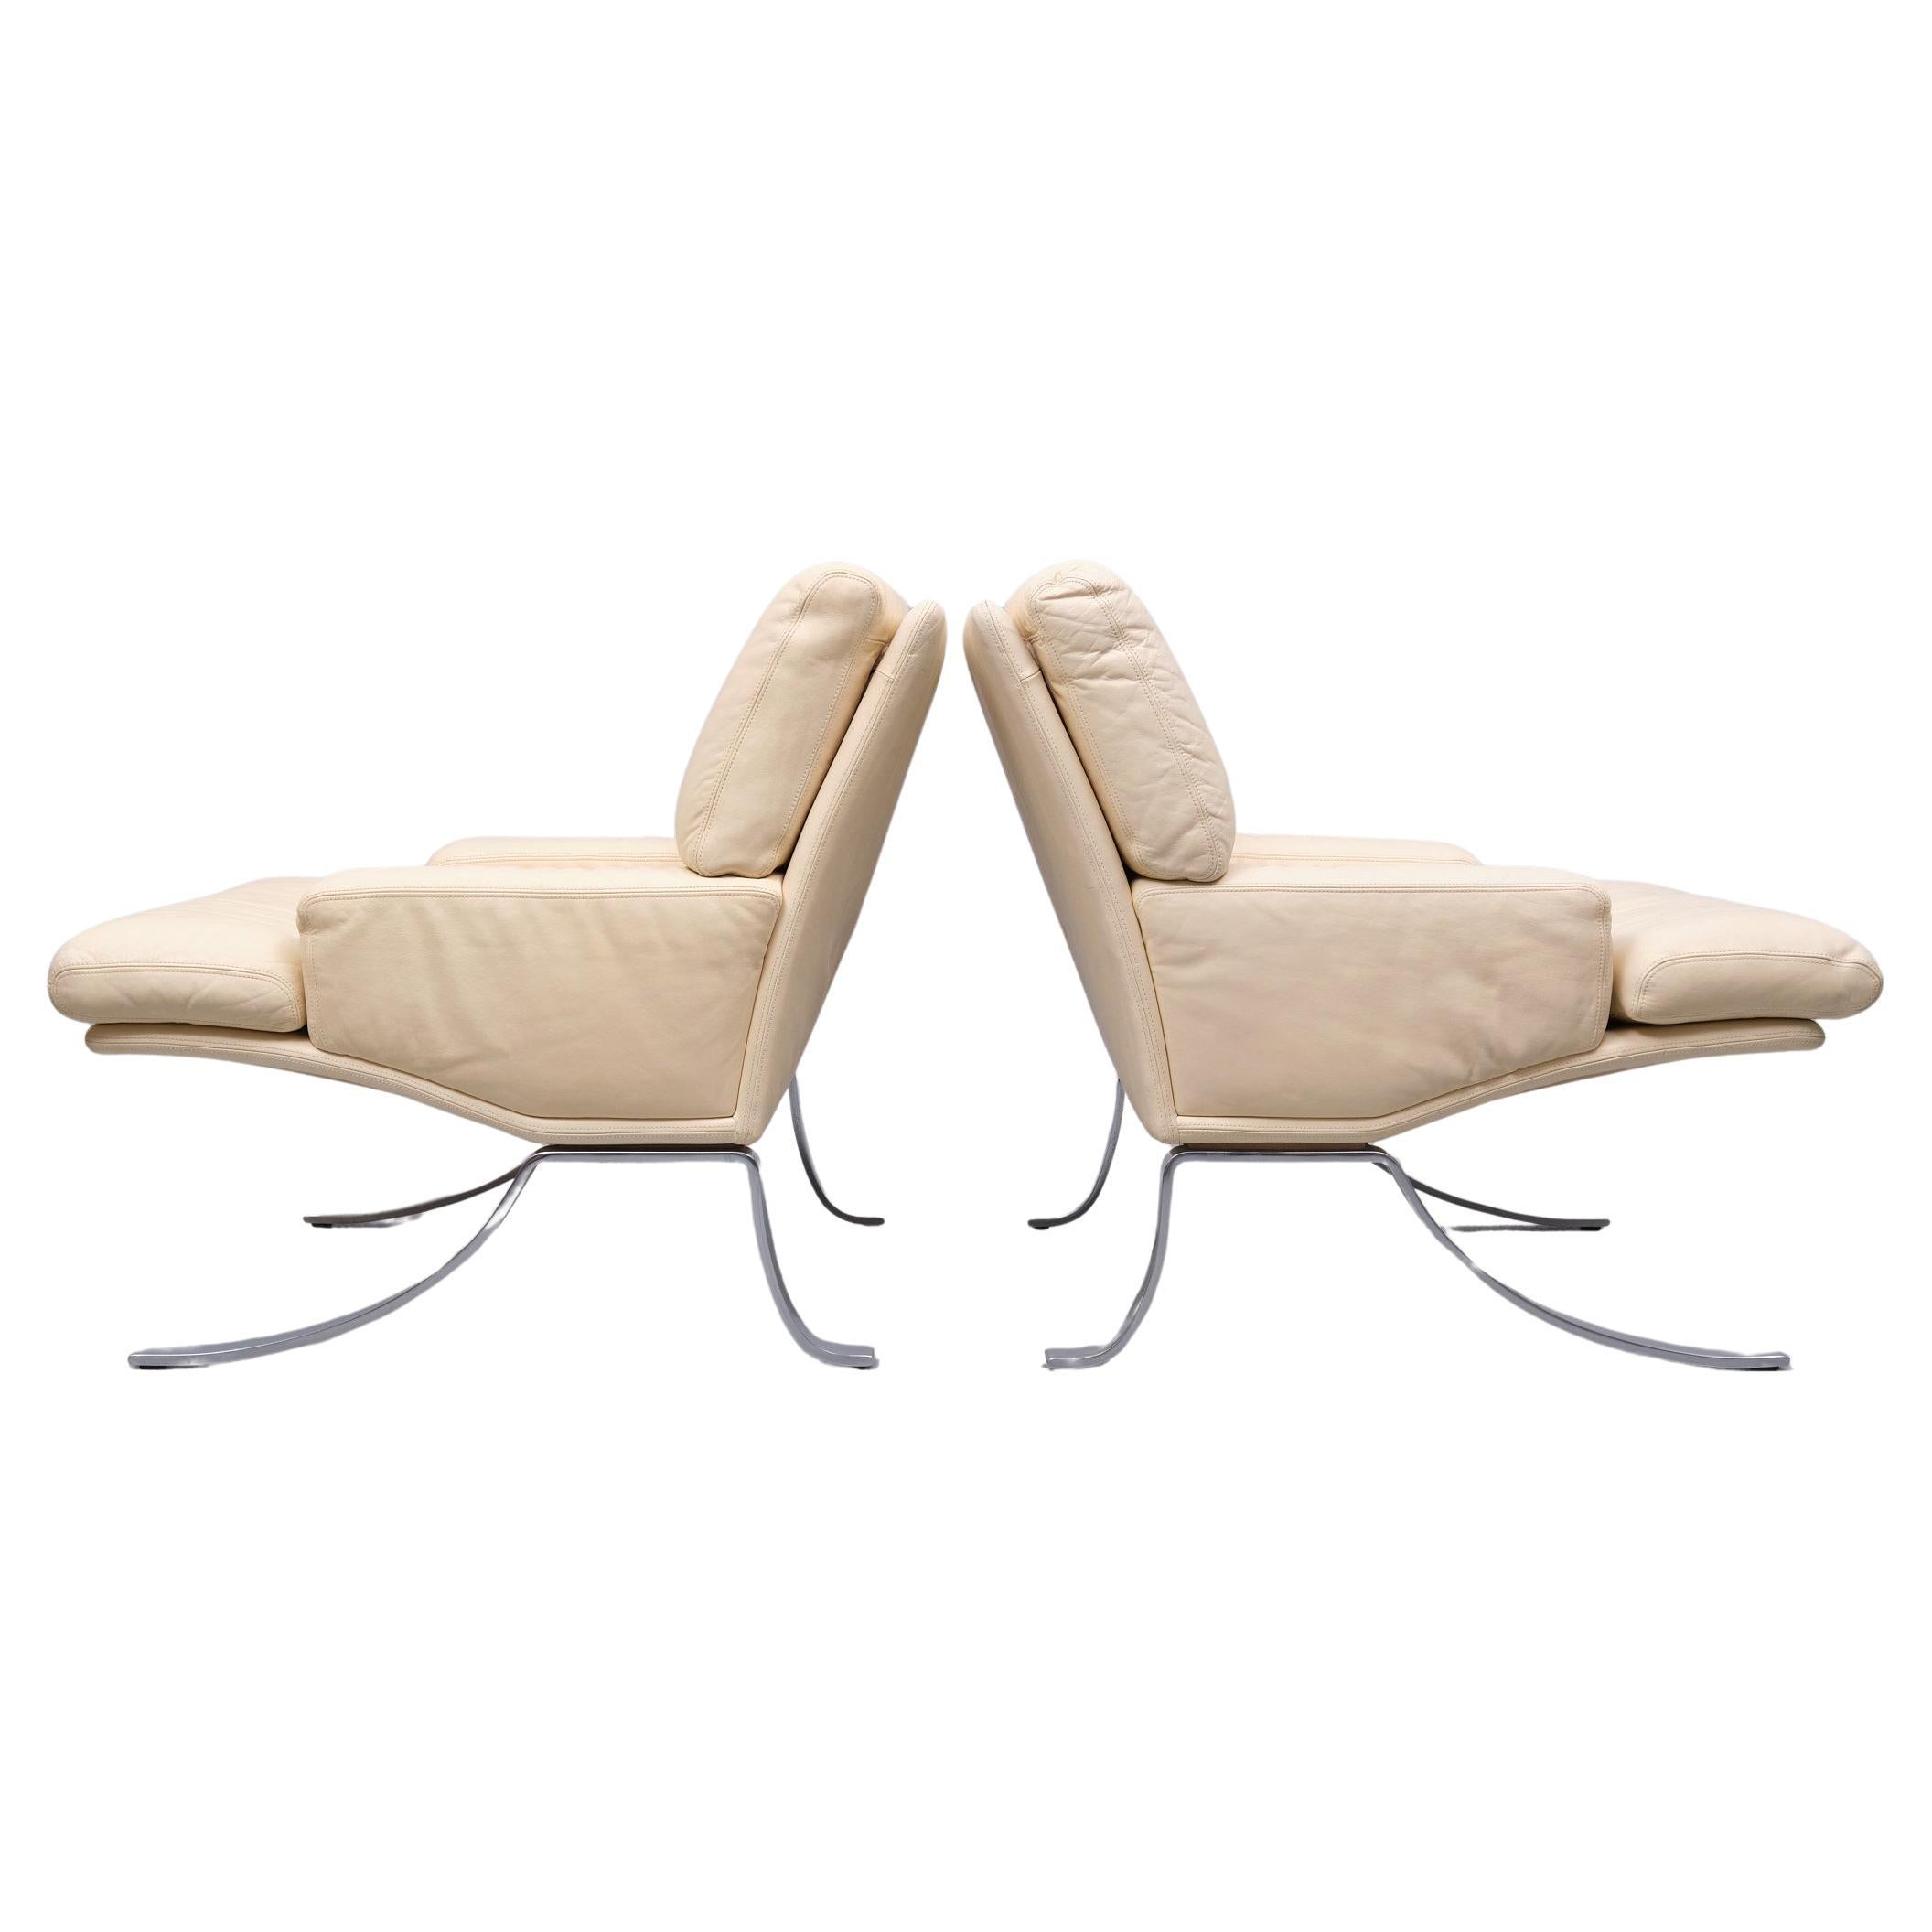 Superbe ensemble de chaises longues et ottomanes. Fabriqué par Durlet Belgique 1970 
Cuir de couleur ivoire, sur une base en acier chromé. Très bon confort d'assise.
Super rare . On dirait quelque chose des Thunderbirds... si élégant... 
Poids élevé